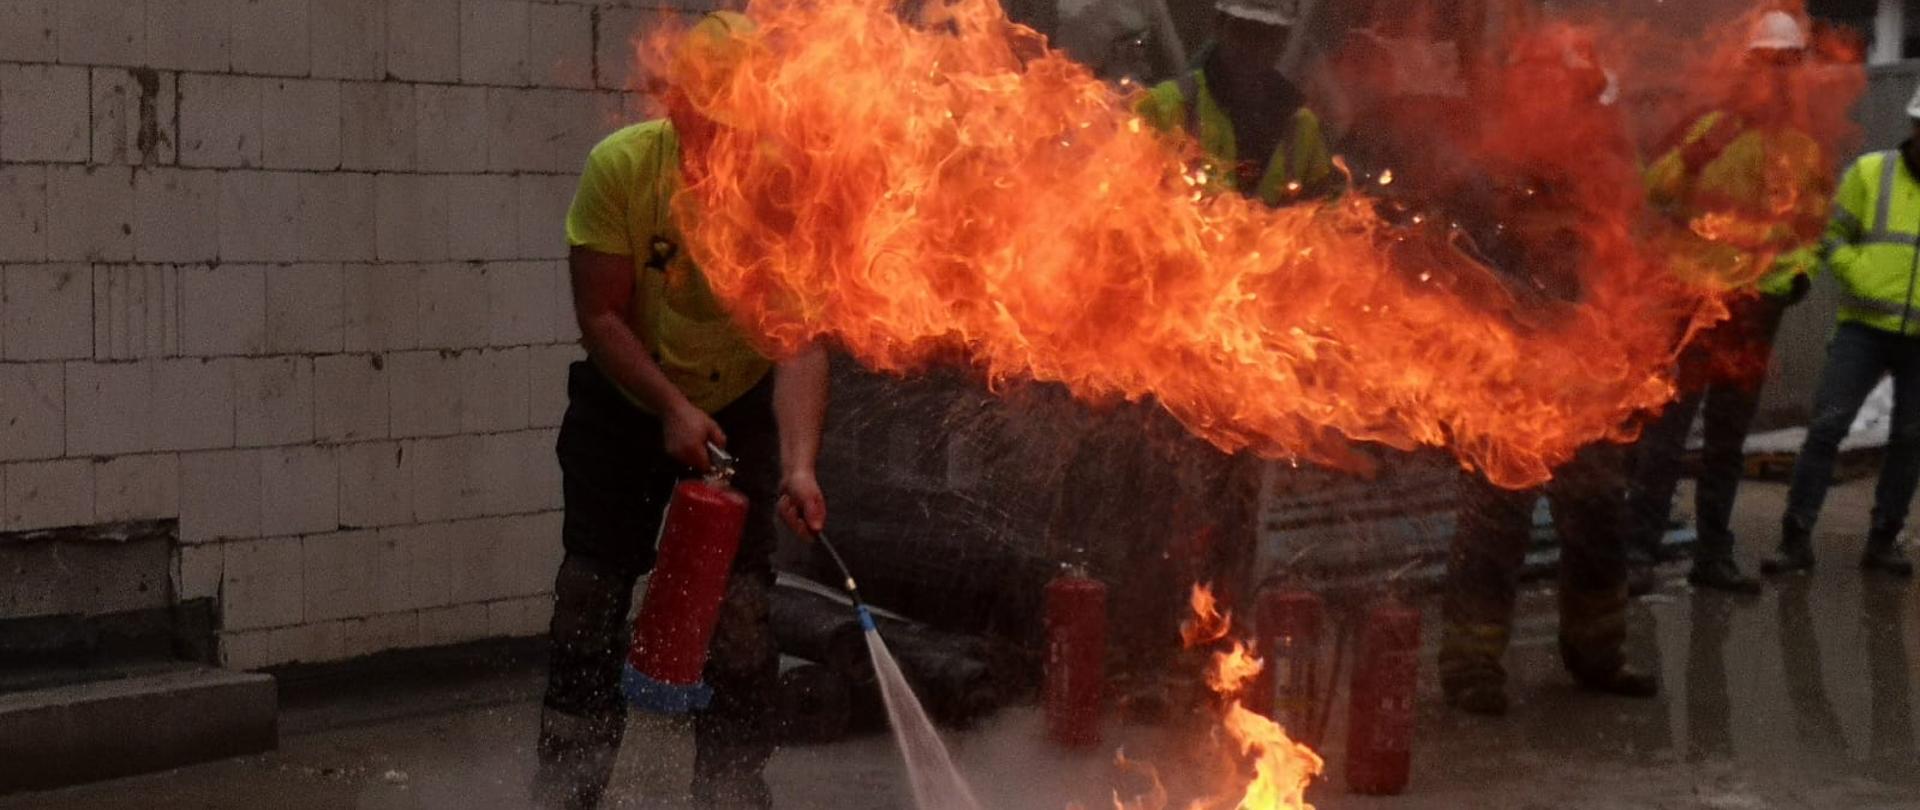 W środkowej części zdjęcia taca z rozpaloną cieczą stojąca na placu przy budowanym budynku, za tacą stoi jeden z pracowników z gaśnicą w ręku. W tle pozostałe osoby z budowy przyglądające się gaszeniu. 